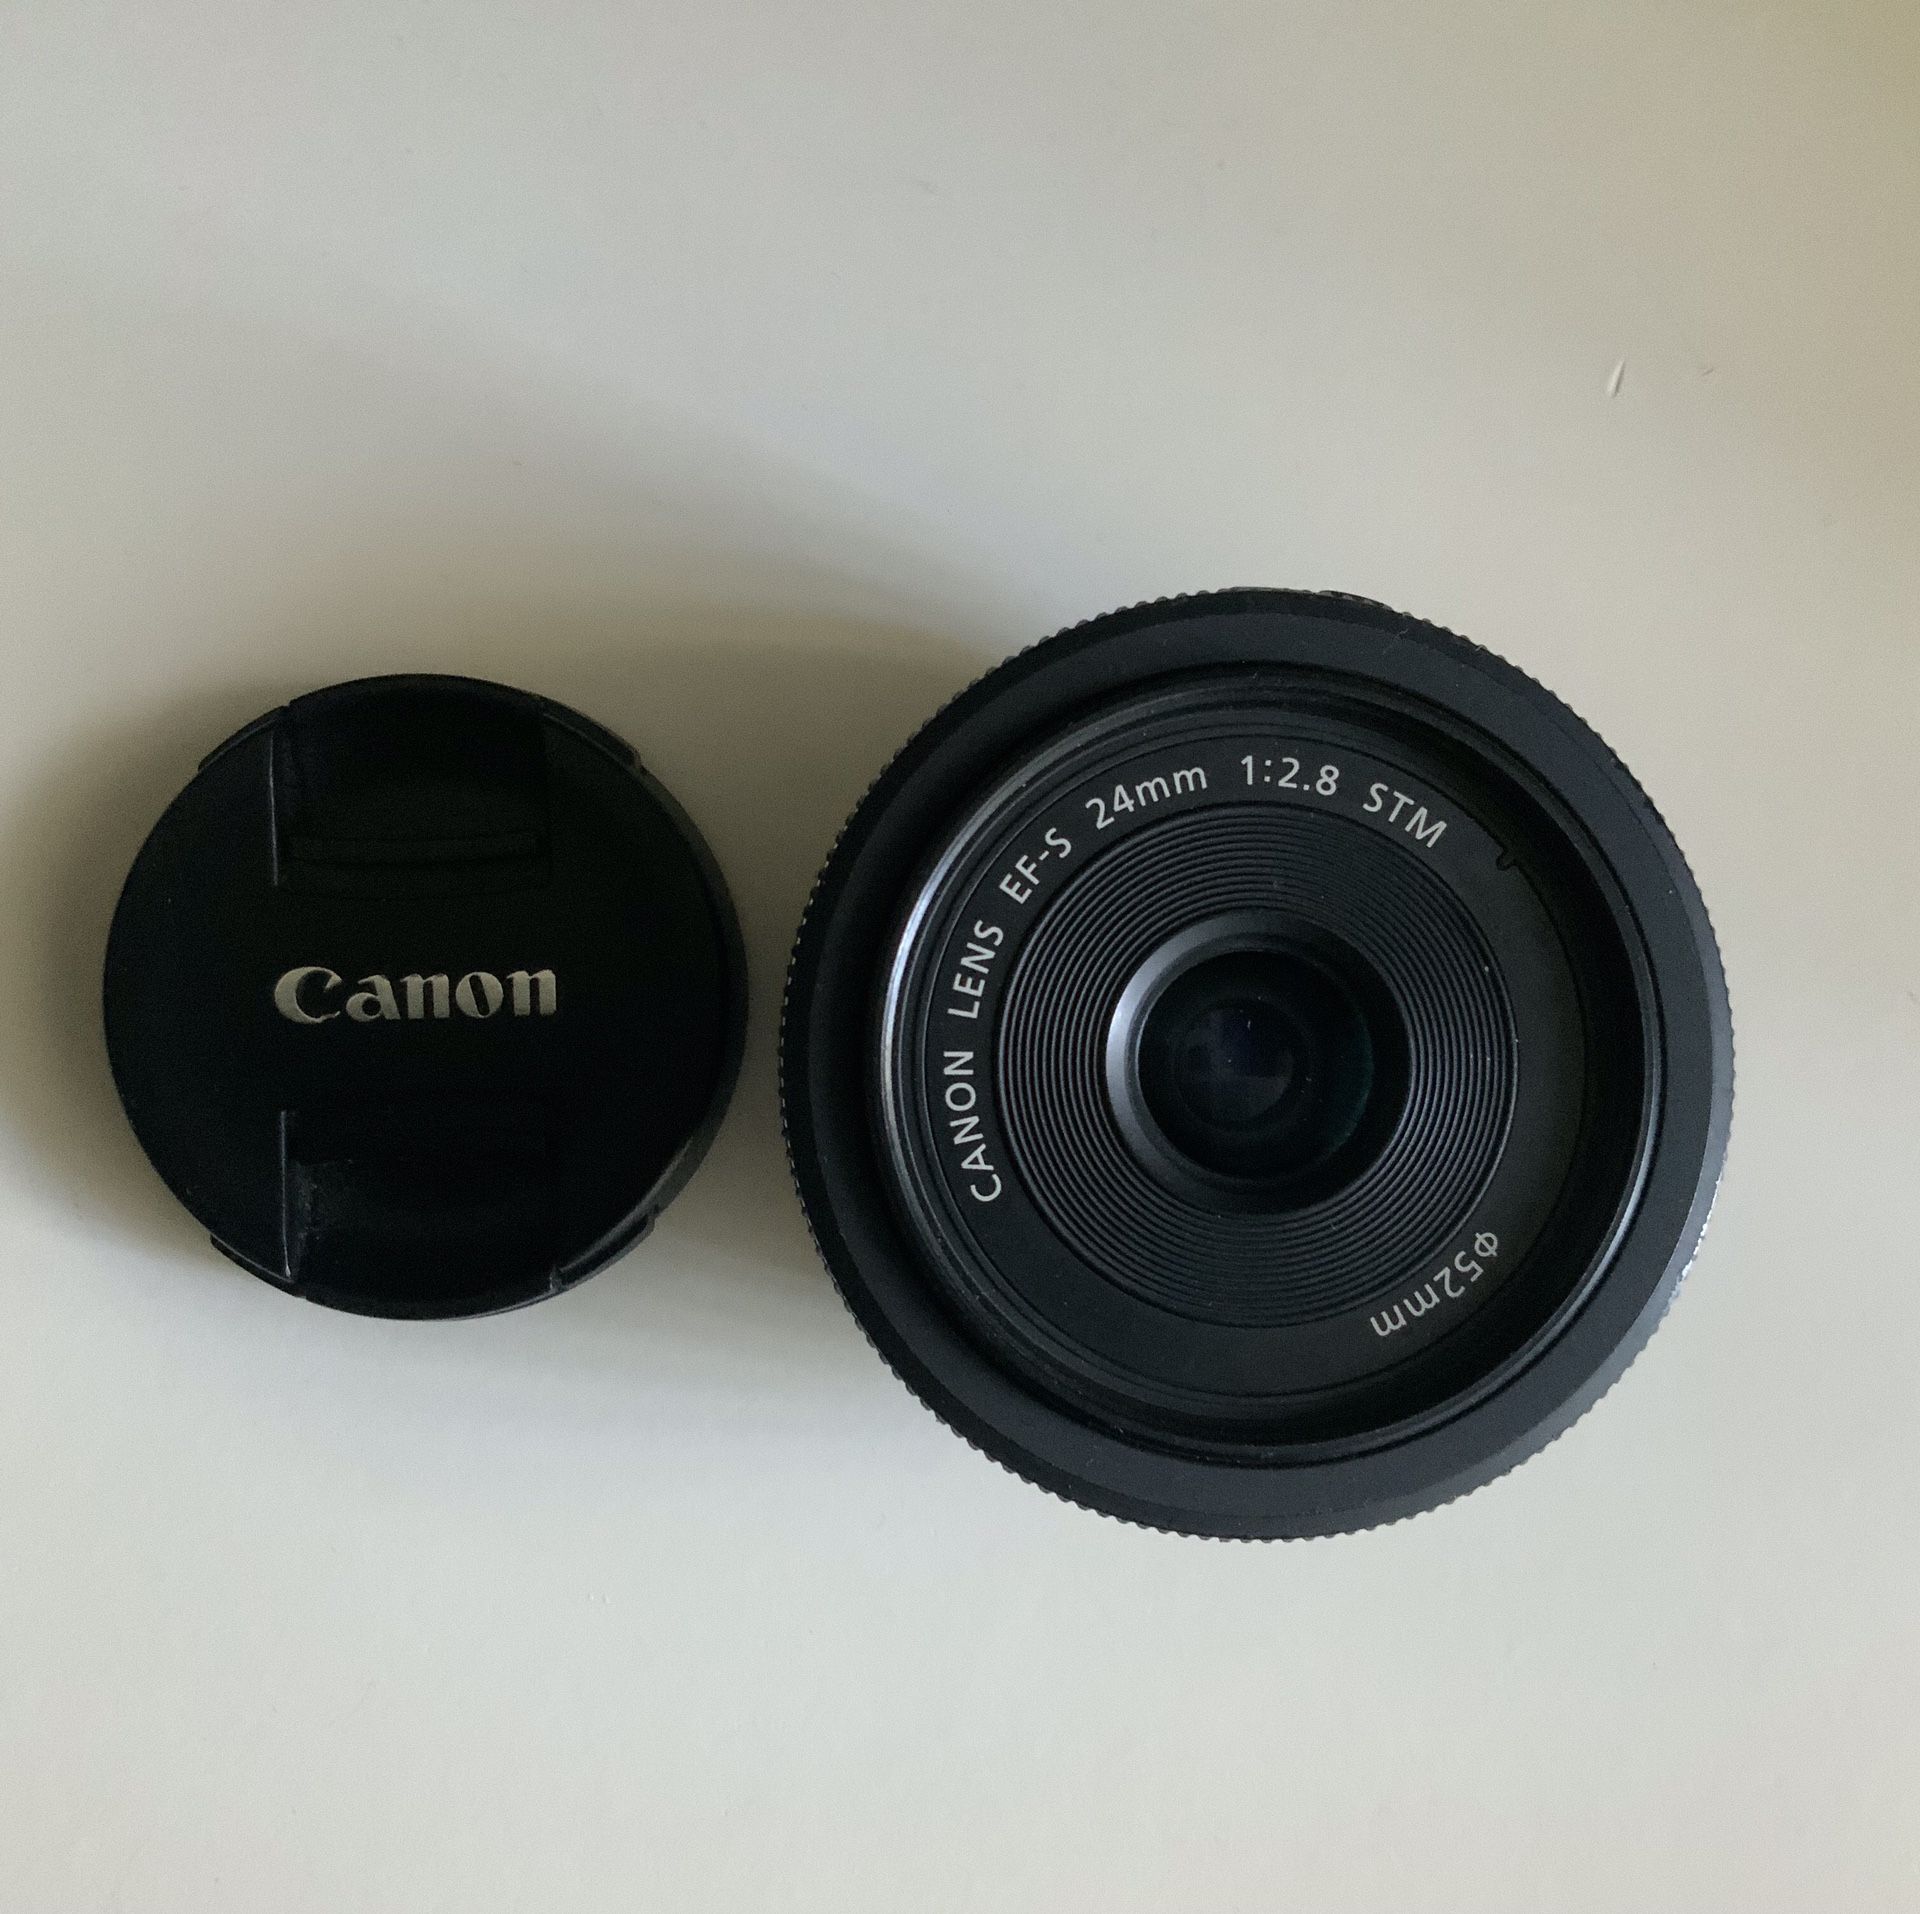 Canon 24mm 2.8 stm lens